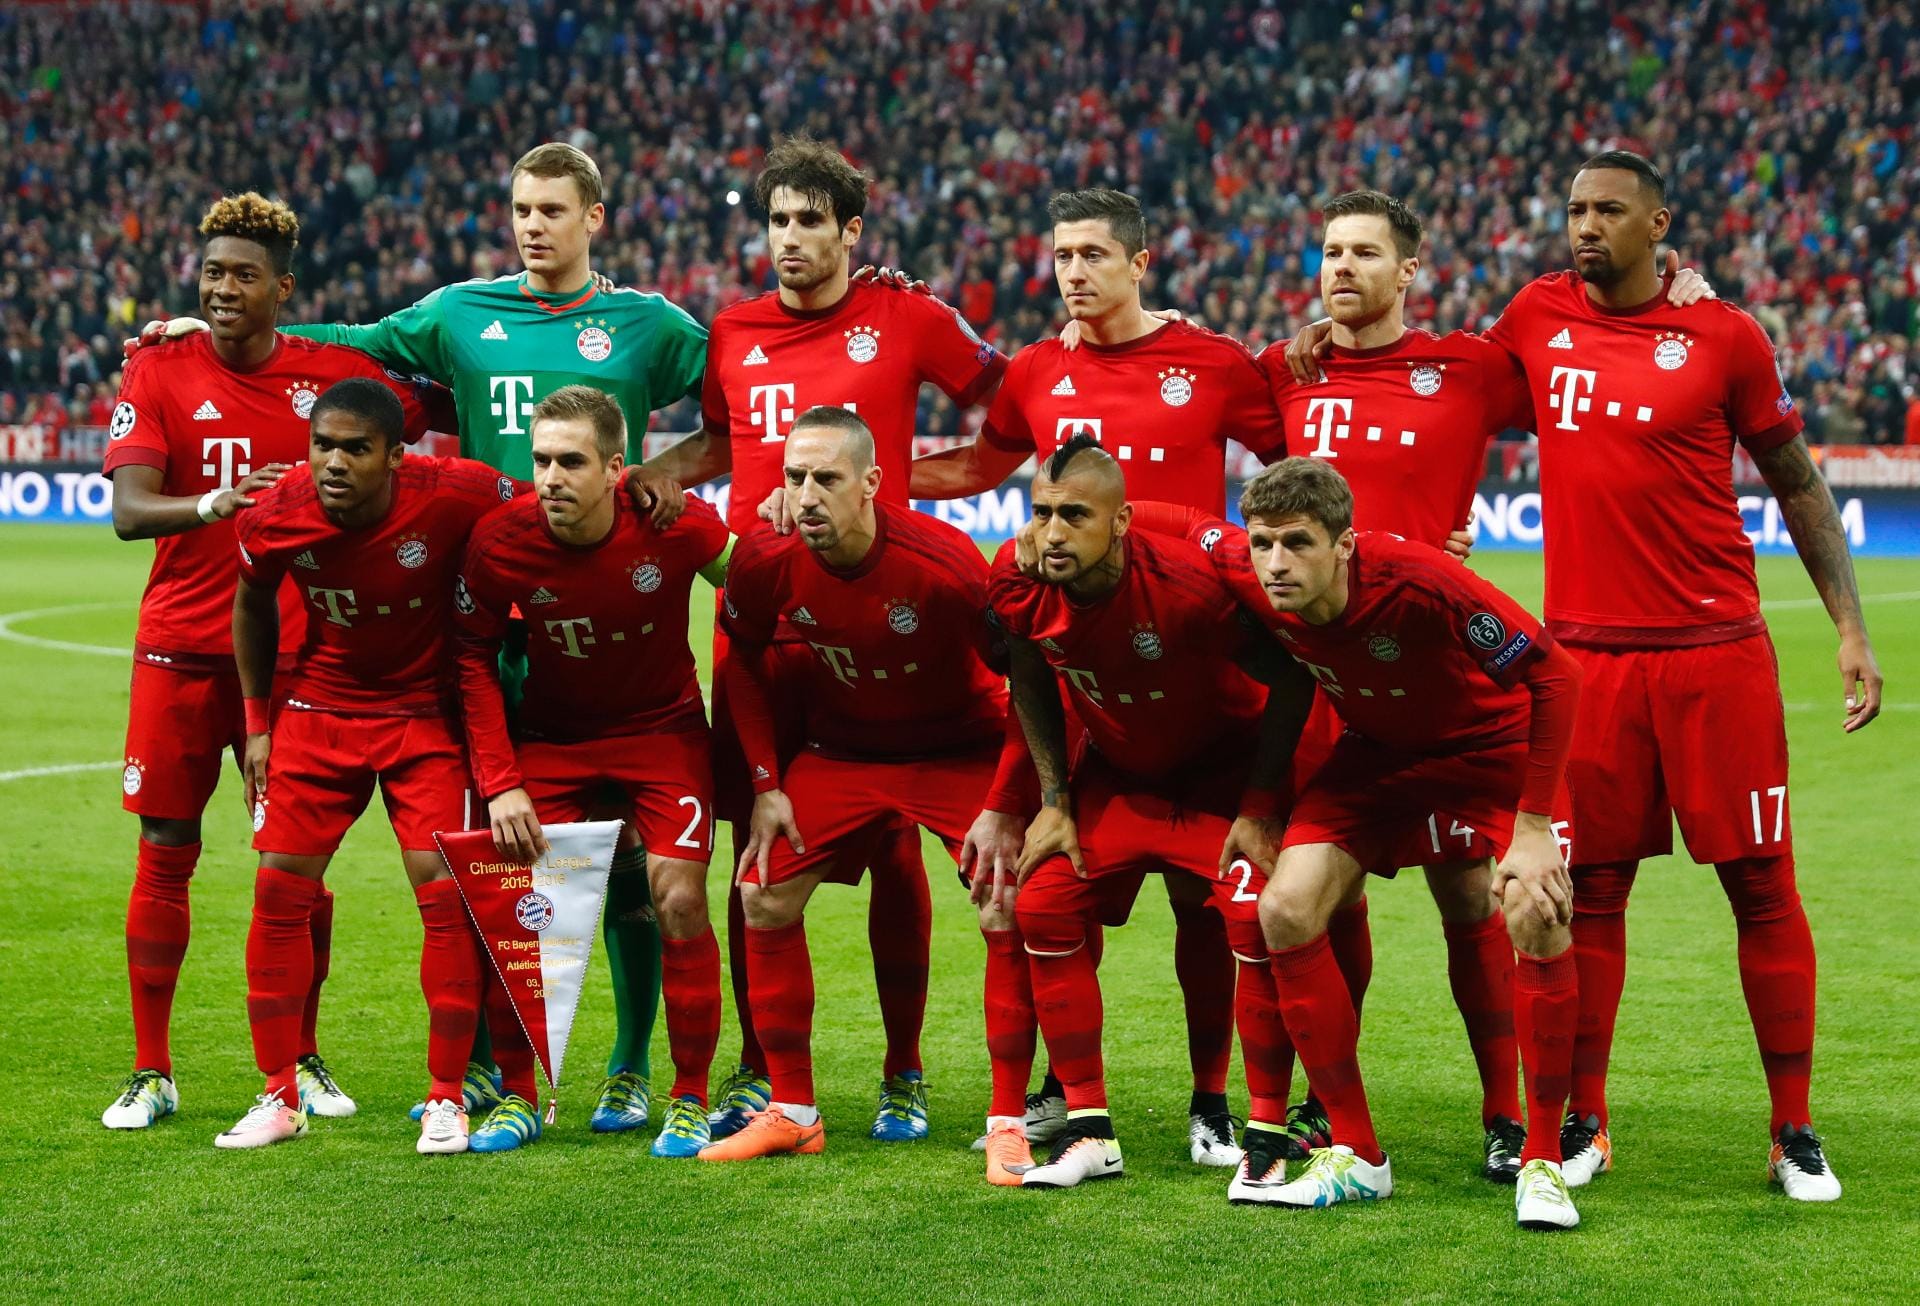 Diese Elf schickte Bayern-Coach Pep Guardiola von Beginn an auf's Feld, um das 0:1 aus dem Hinspiel in Madrid auszumärzen.